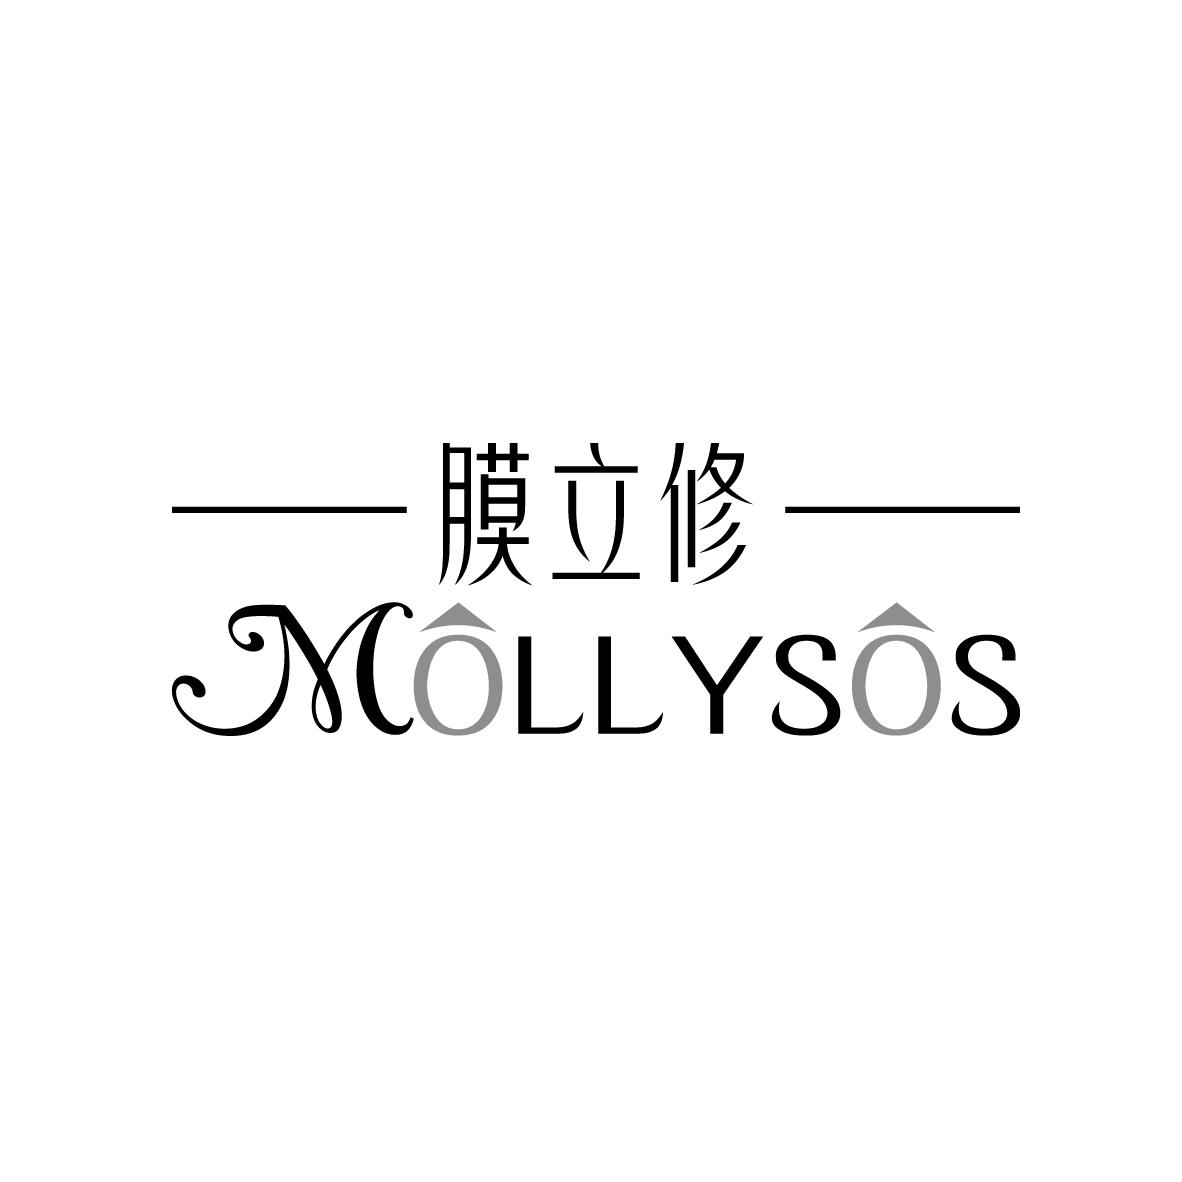 膜立俢 MOLLYSOS第3类日化用品商标14900元出售转让中